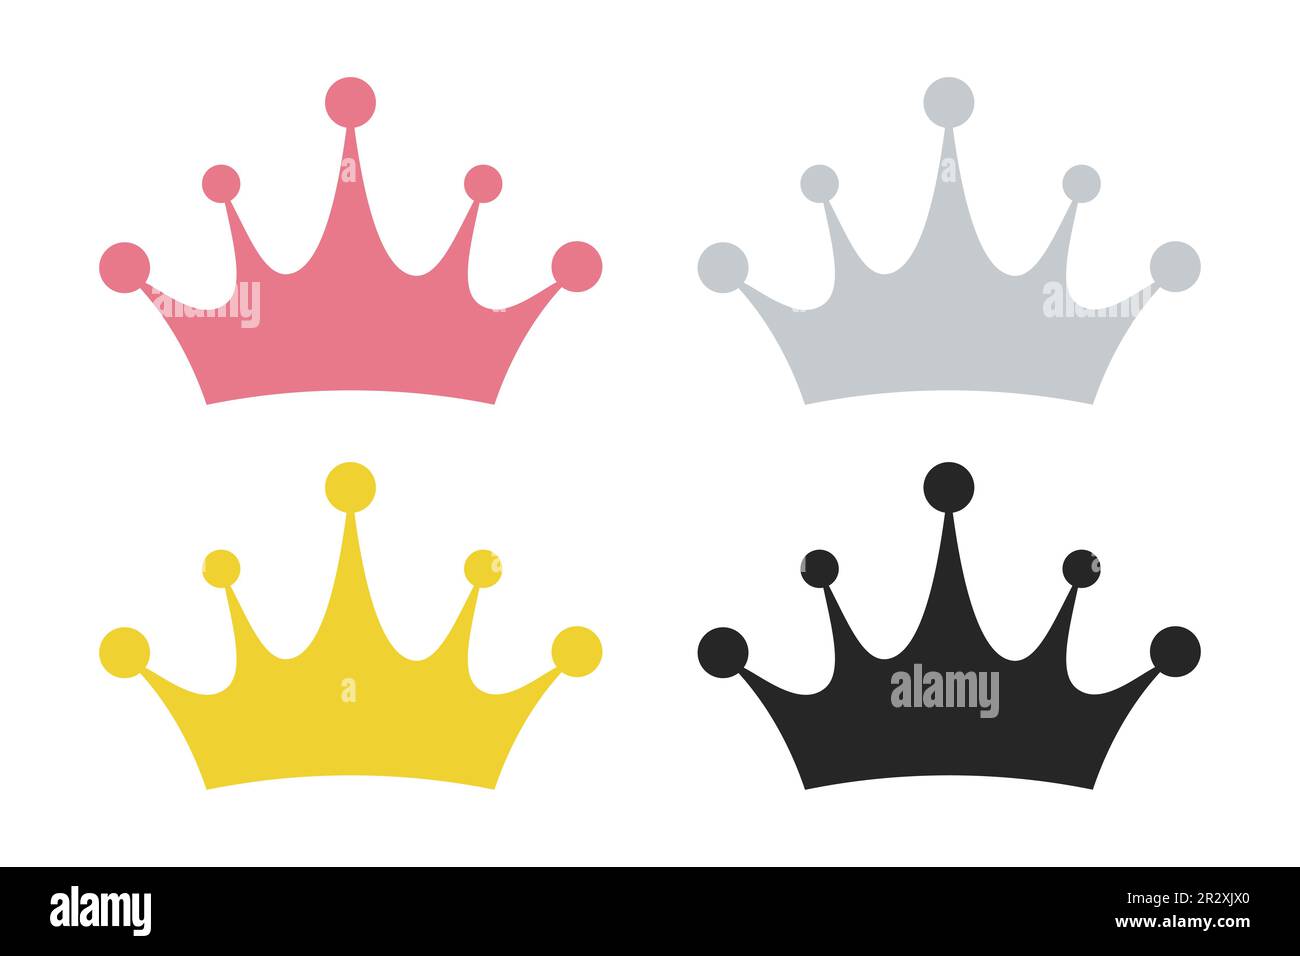 Icone vettoriali della corona del re su sfondo bianco Illustrazione Vettoriale